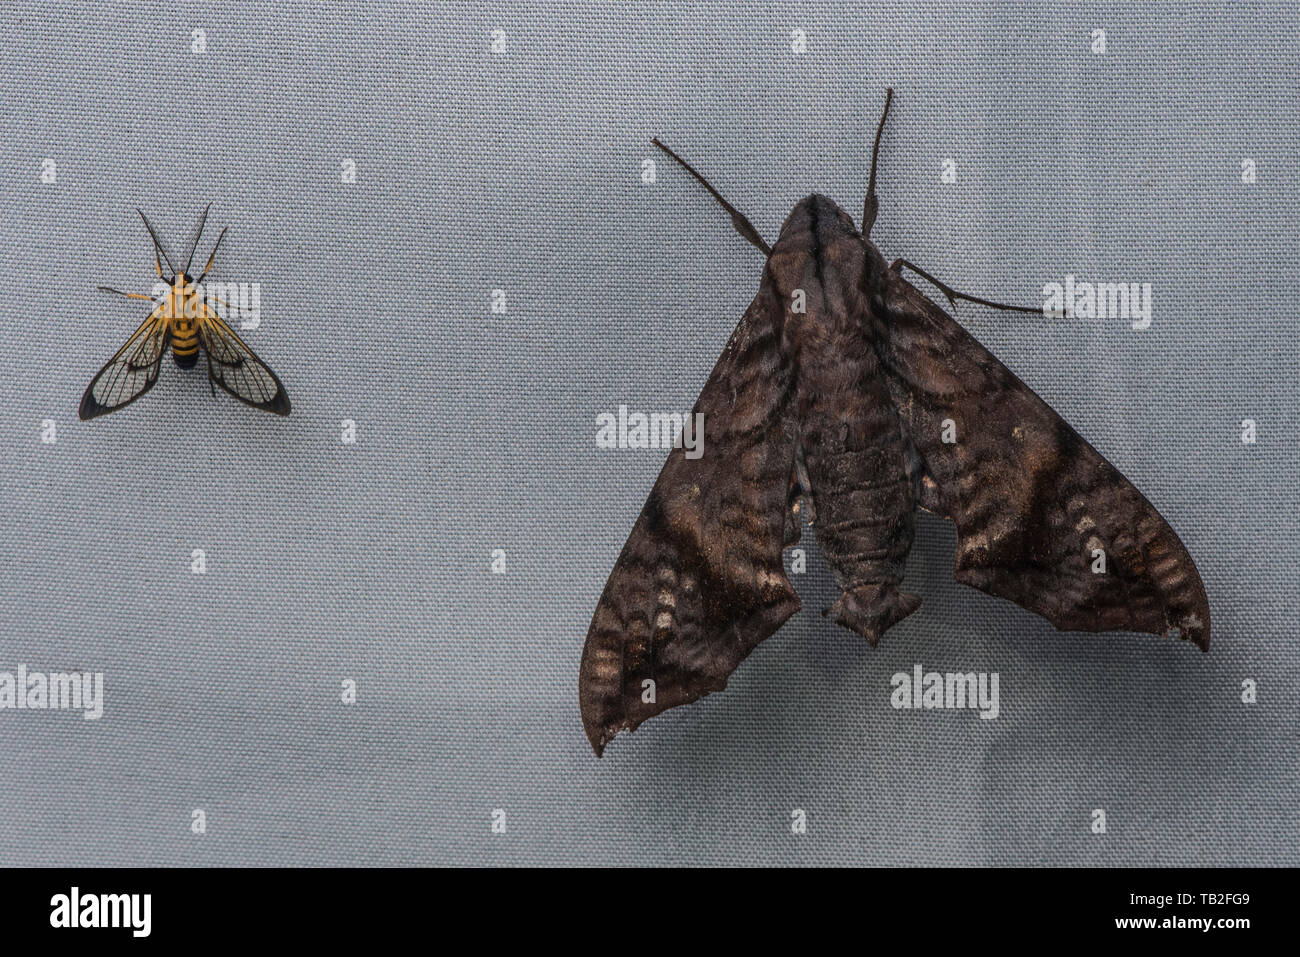 Eine sphinx Moth neben einem viel kleineren Tiger Moth (Loxophlebia nomia) vom ecuadorianischen Nebelwald. Stockfoto